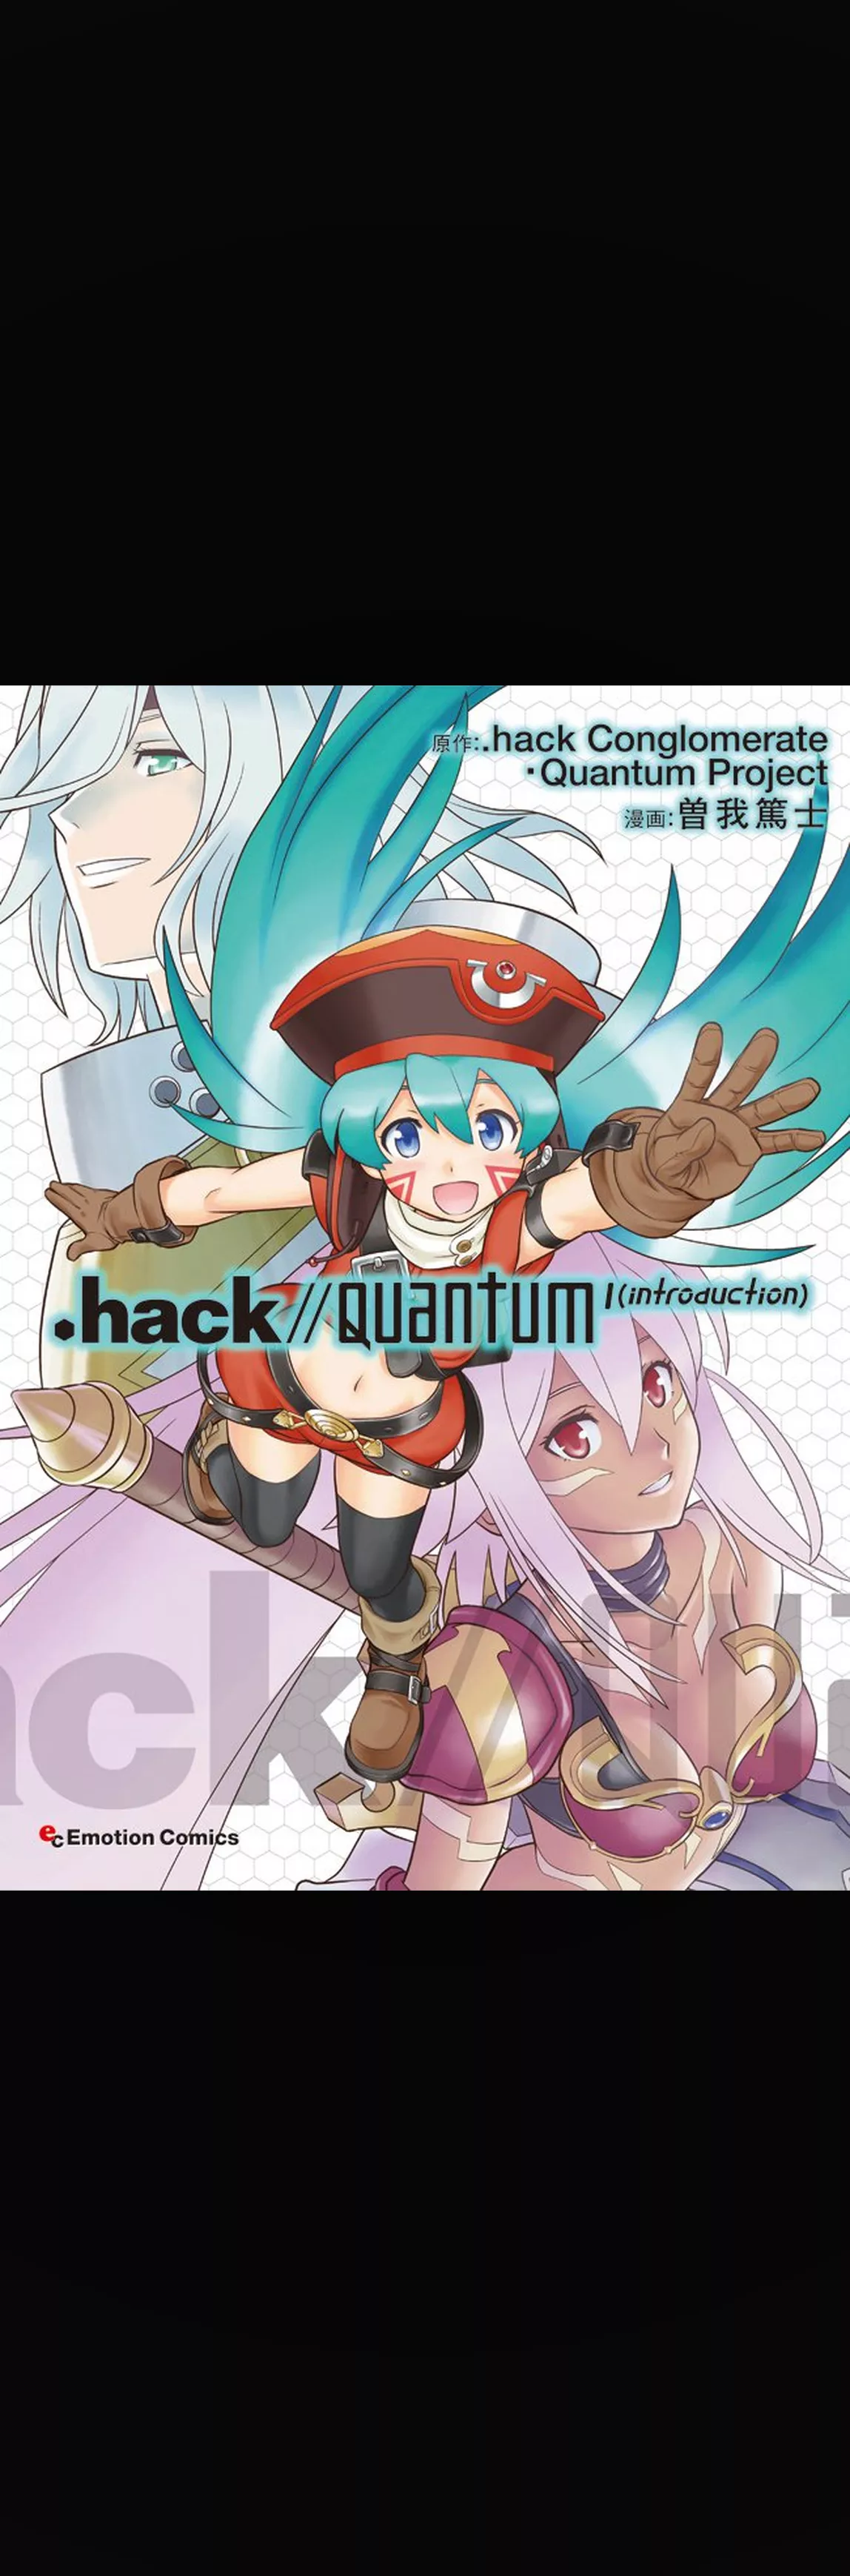 .hack//Quantum I(introduction)(1)